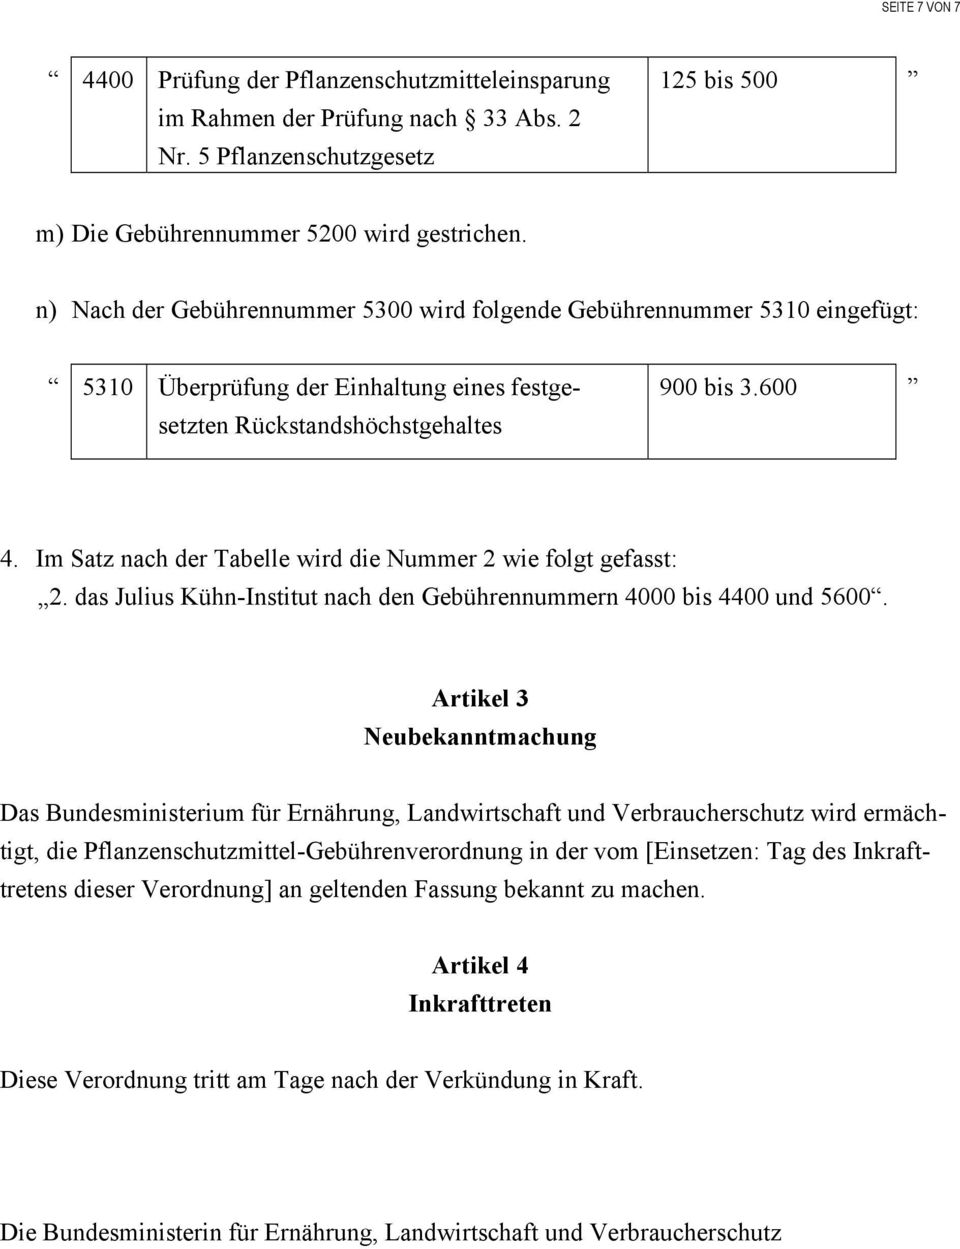 Im Satz nach der Tabelle wird die Nummer 2 wie folgt gefasst: 2. das Julius Kühn-Institut nach den Gebührennummern 4000 bis 4400 und 5600.